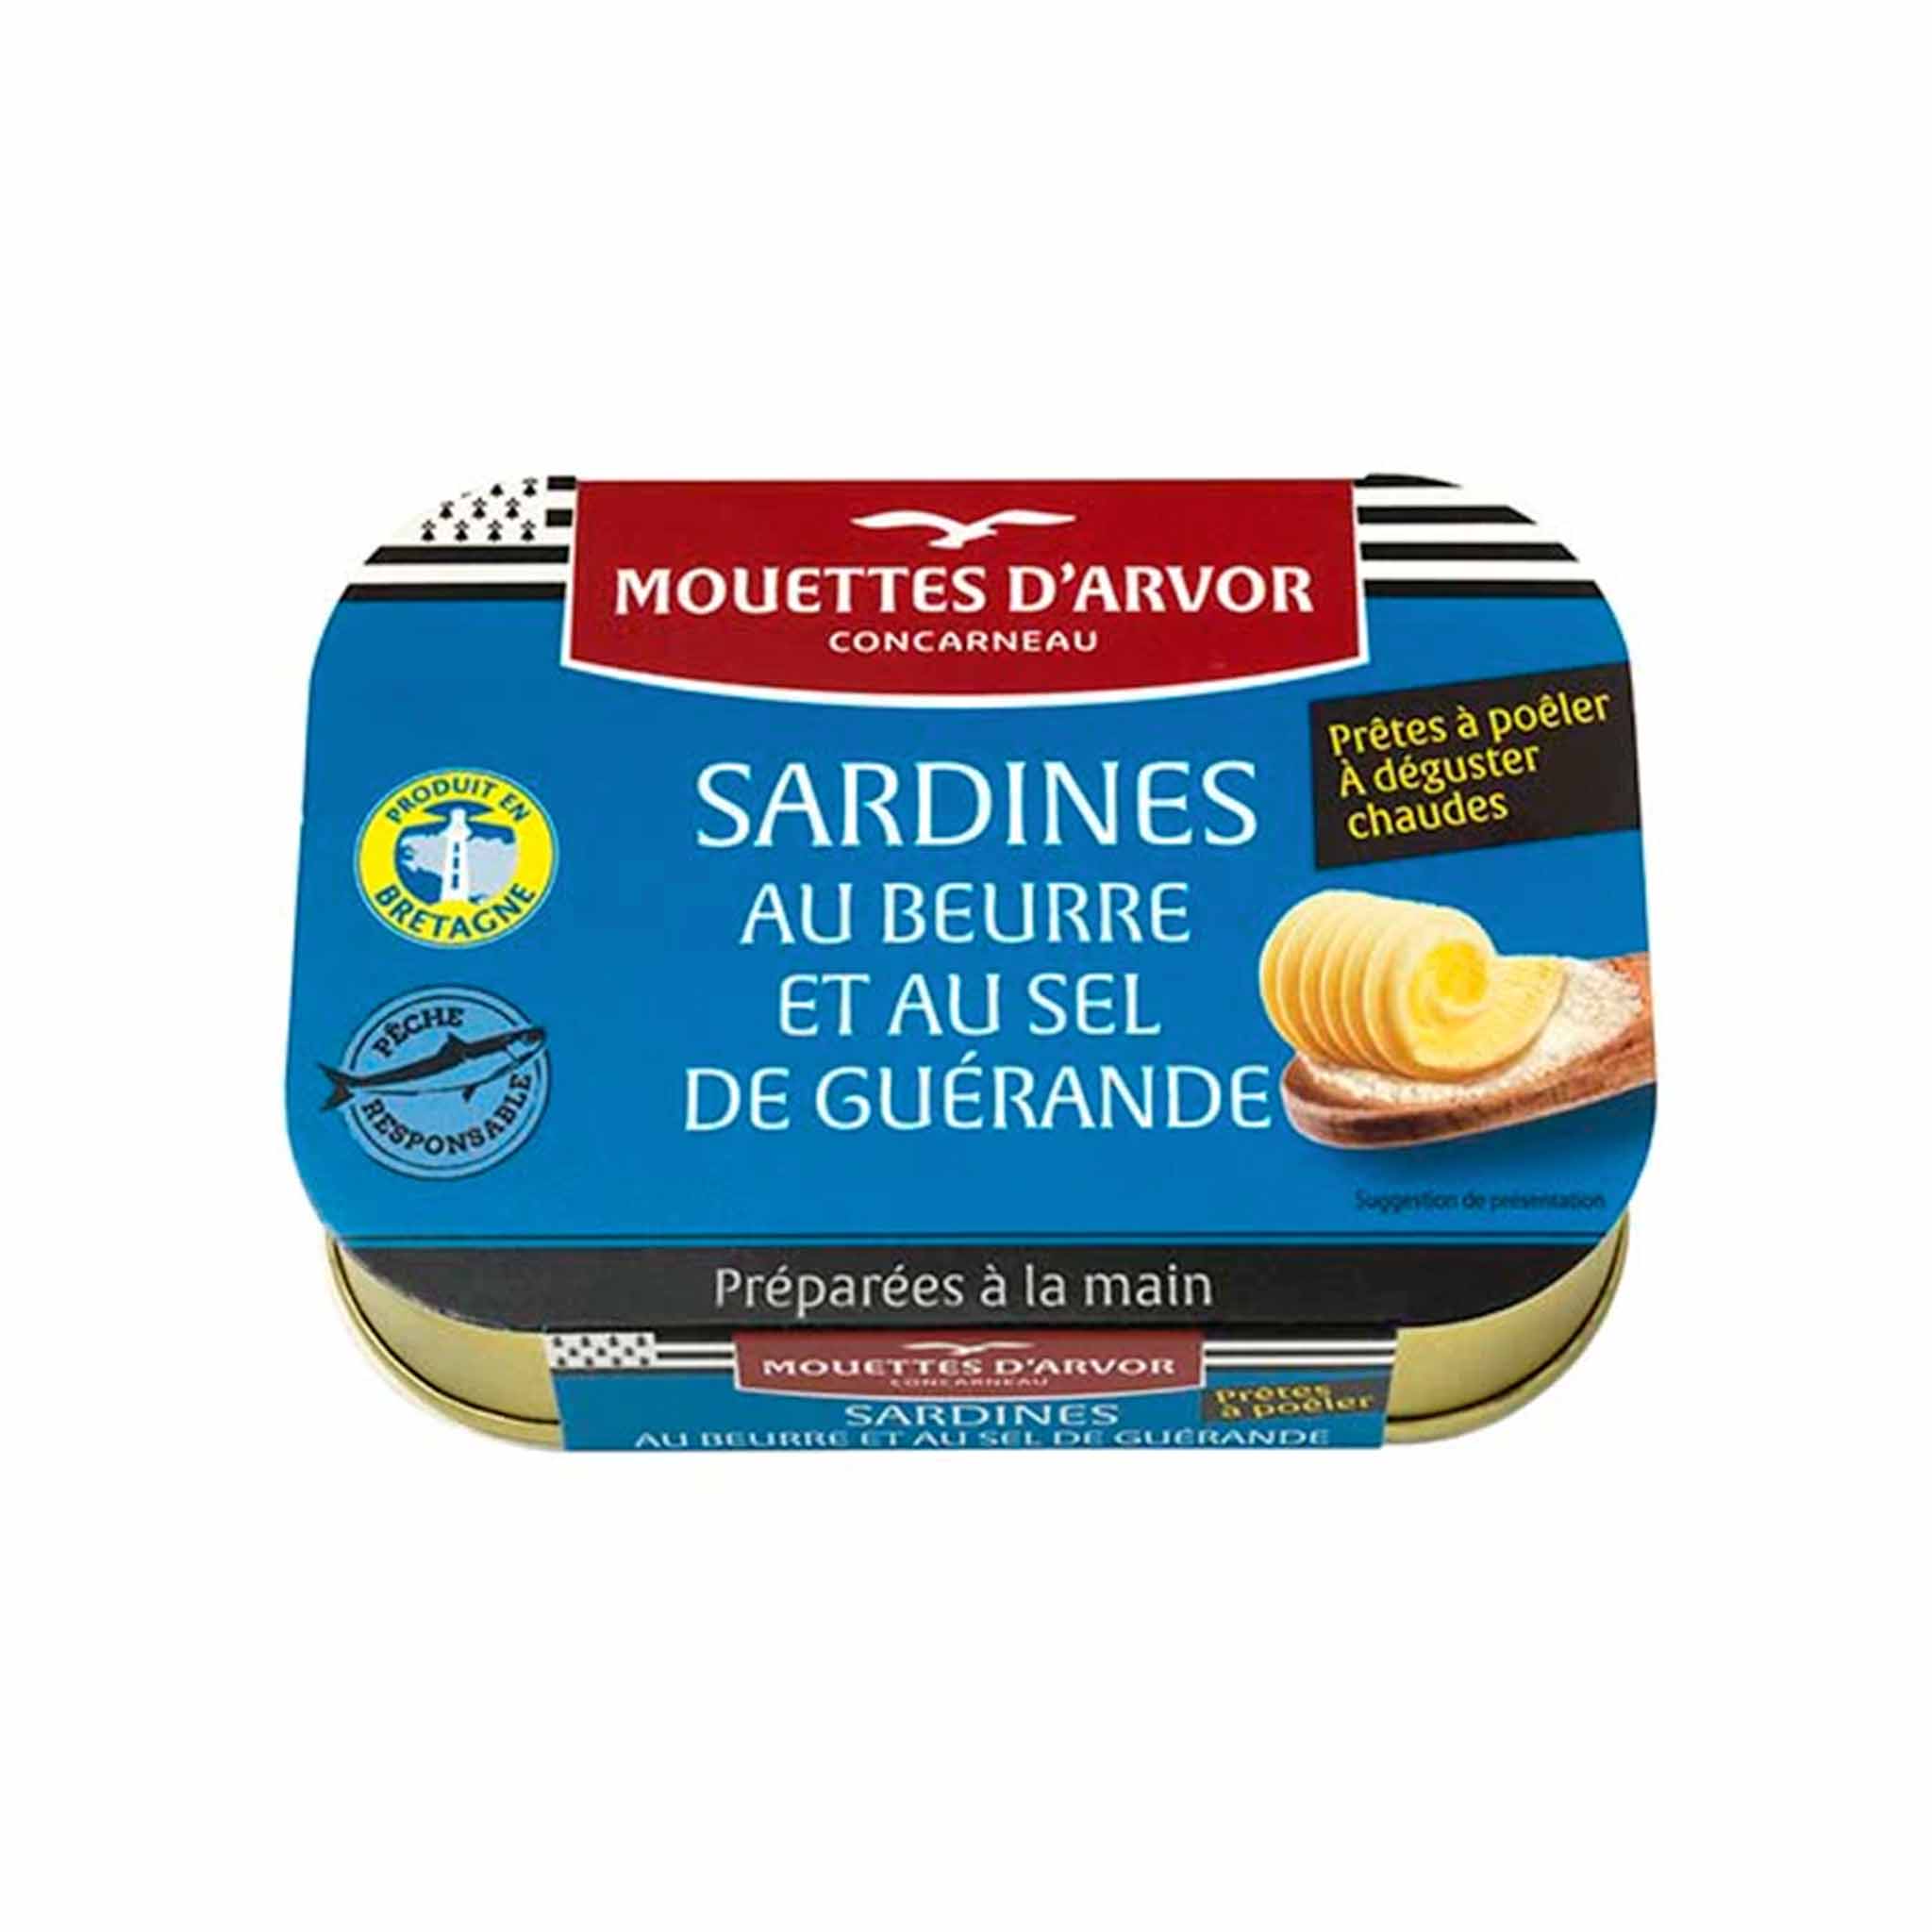 Les Mouettes d'Arvor Sardines with Butter Sea Salt